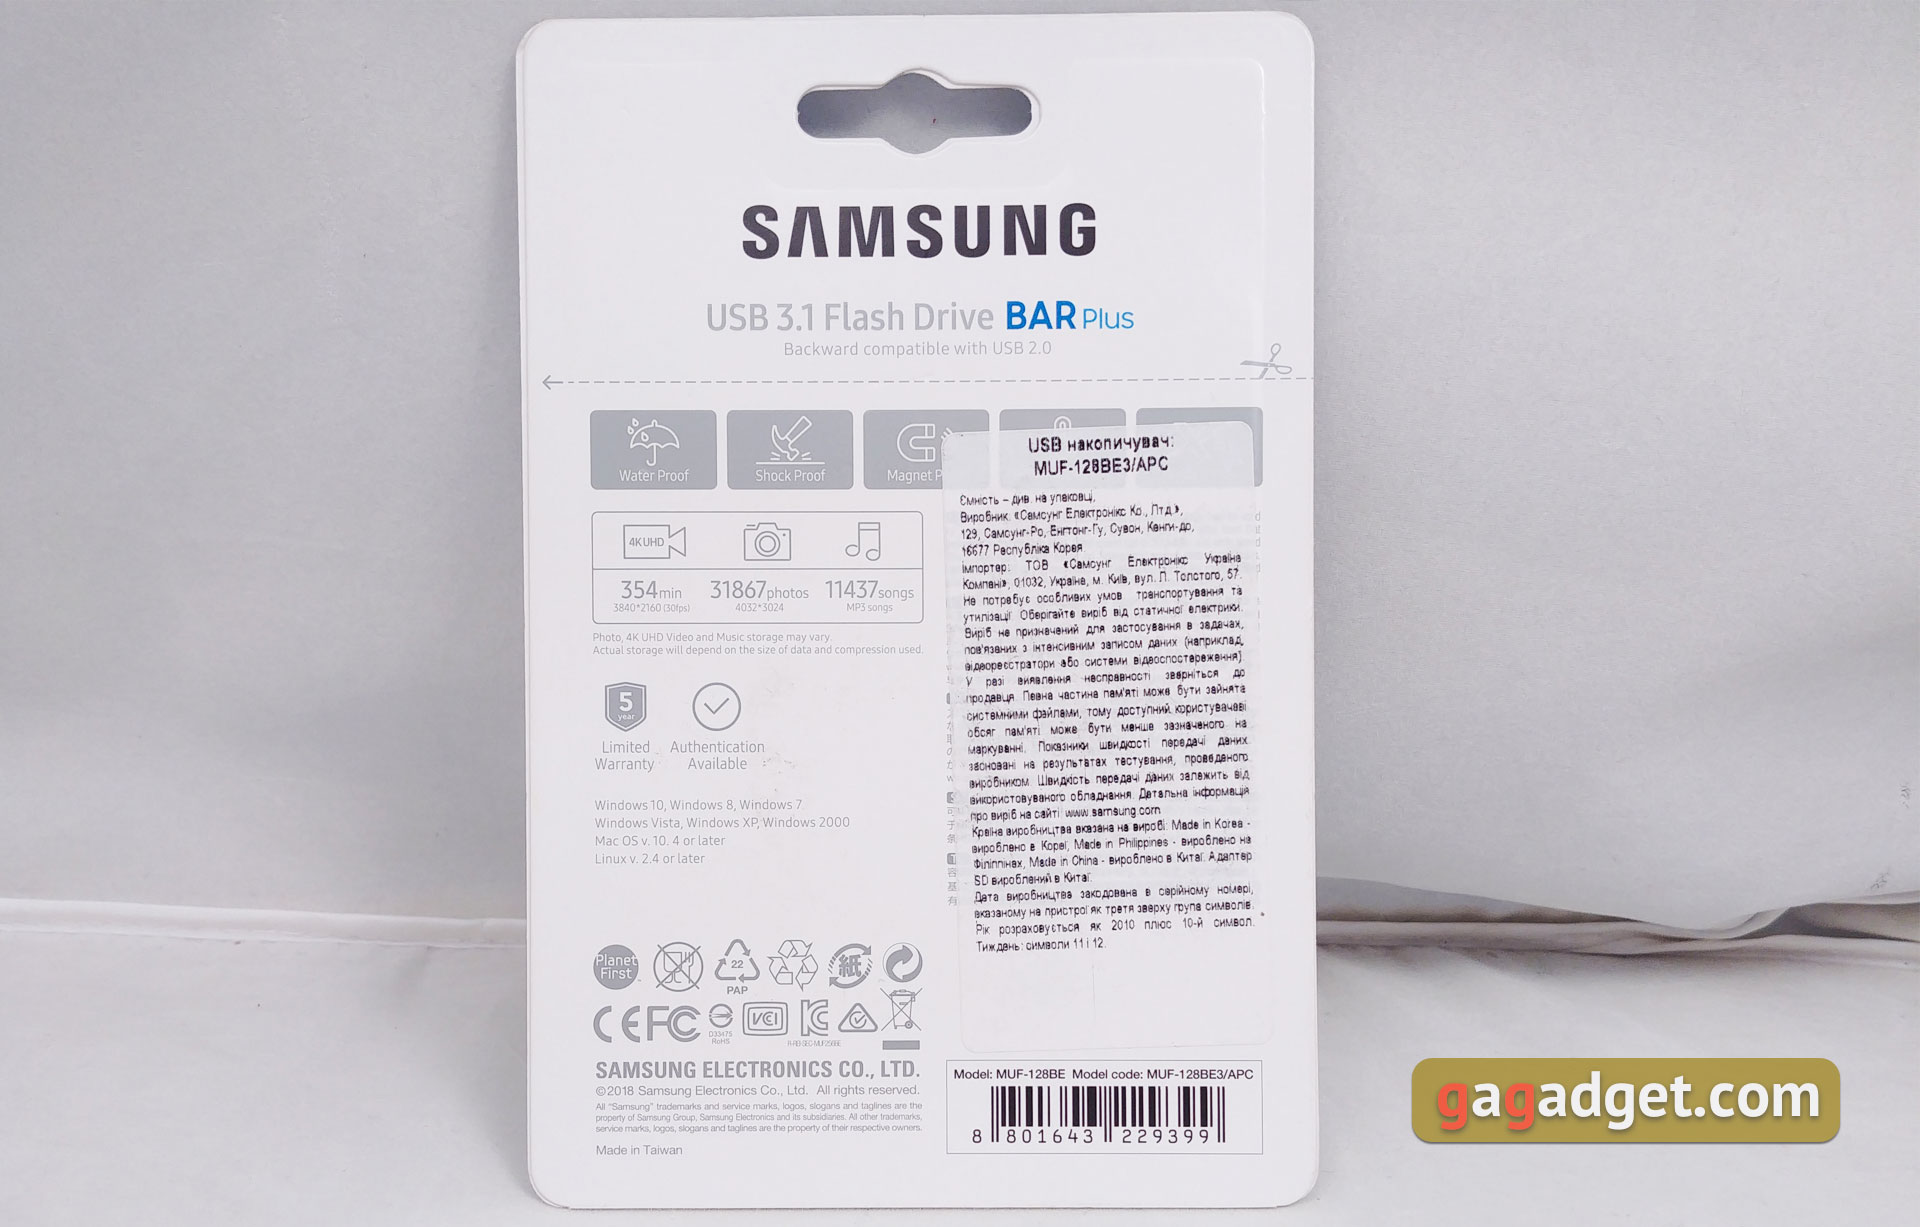 Обзор выносливых MicroSD Samsung PRO Endurance Card и USB-флешки Bar Plus-26